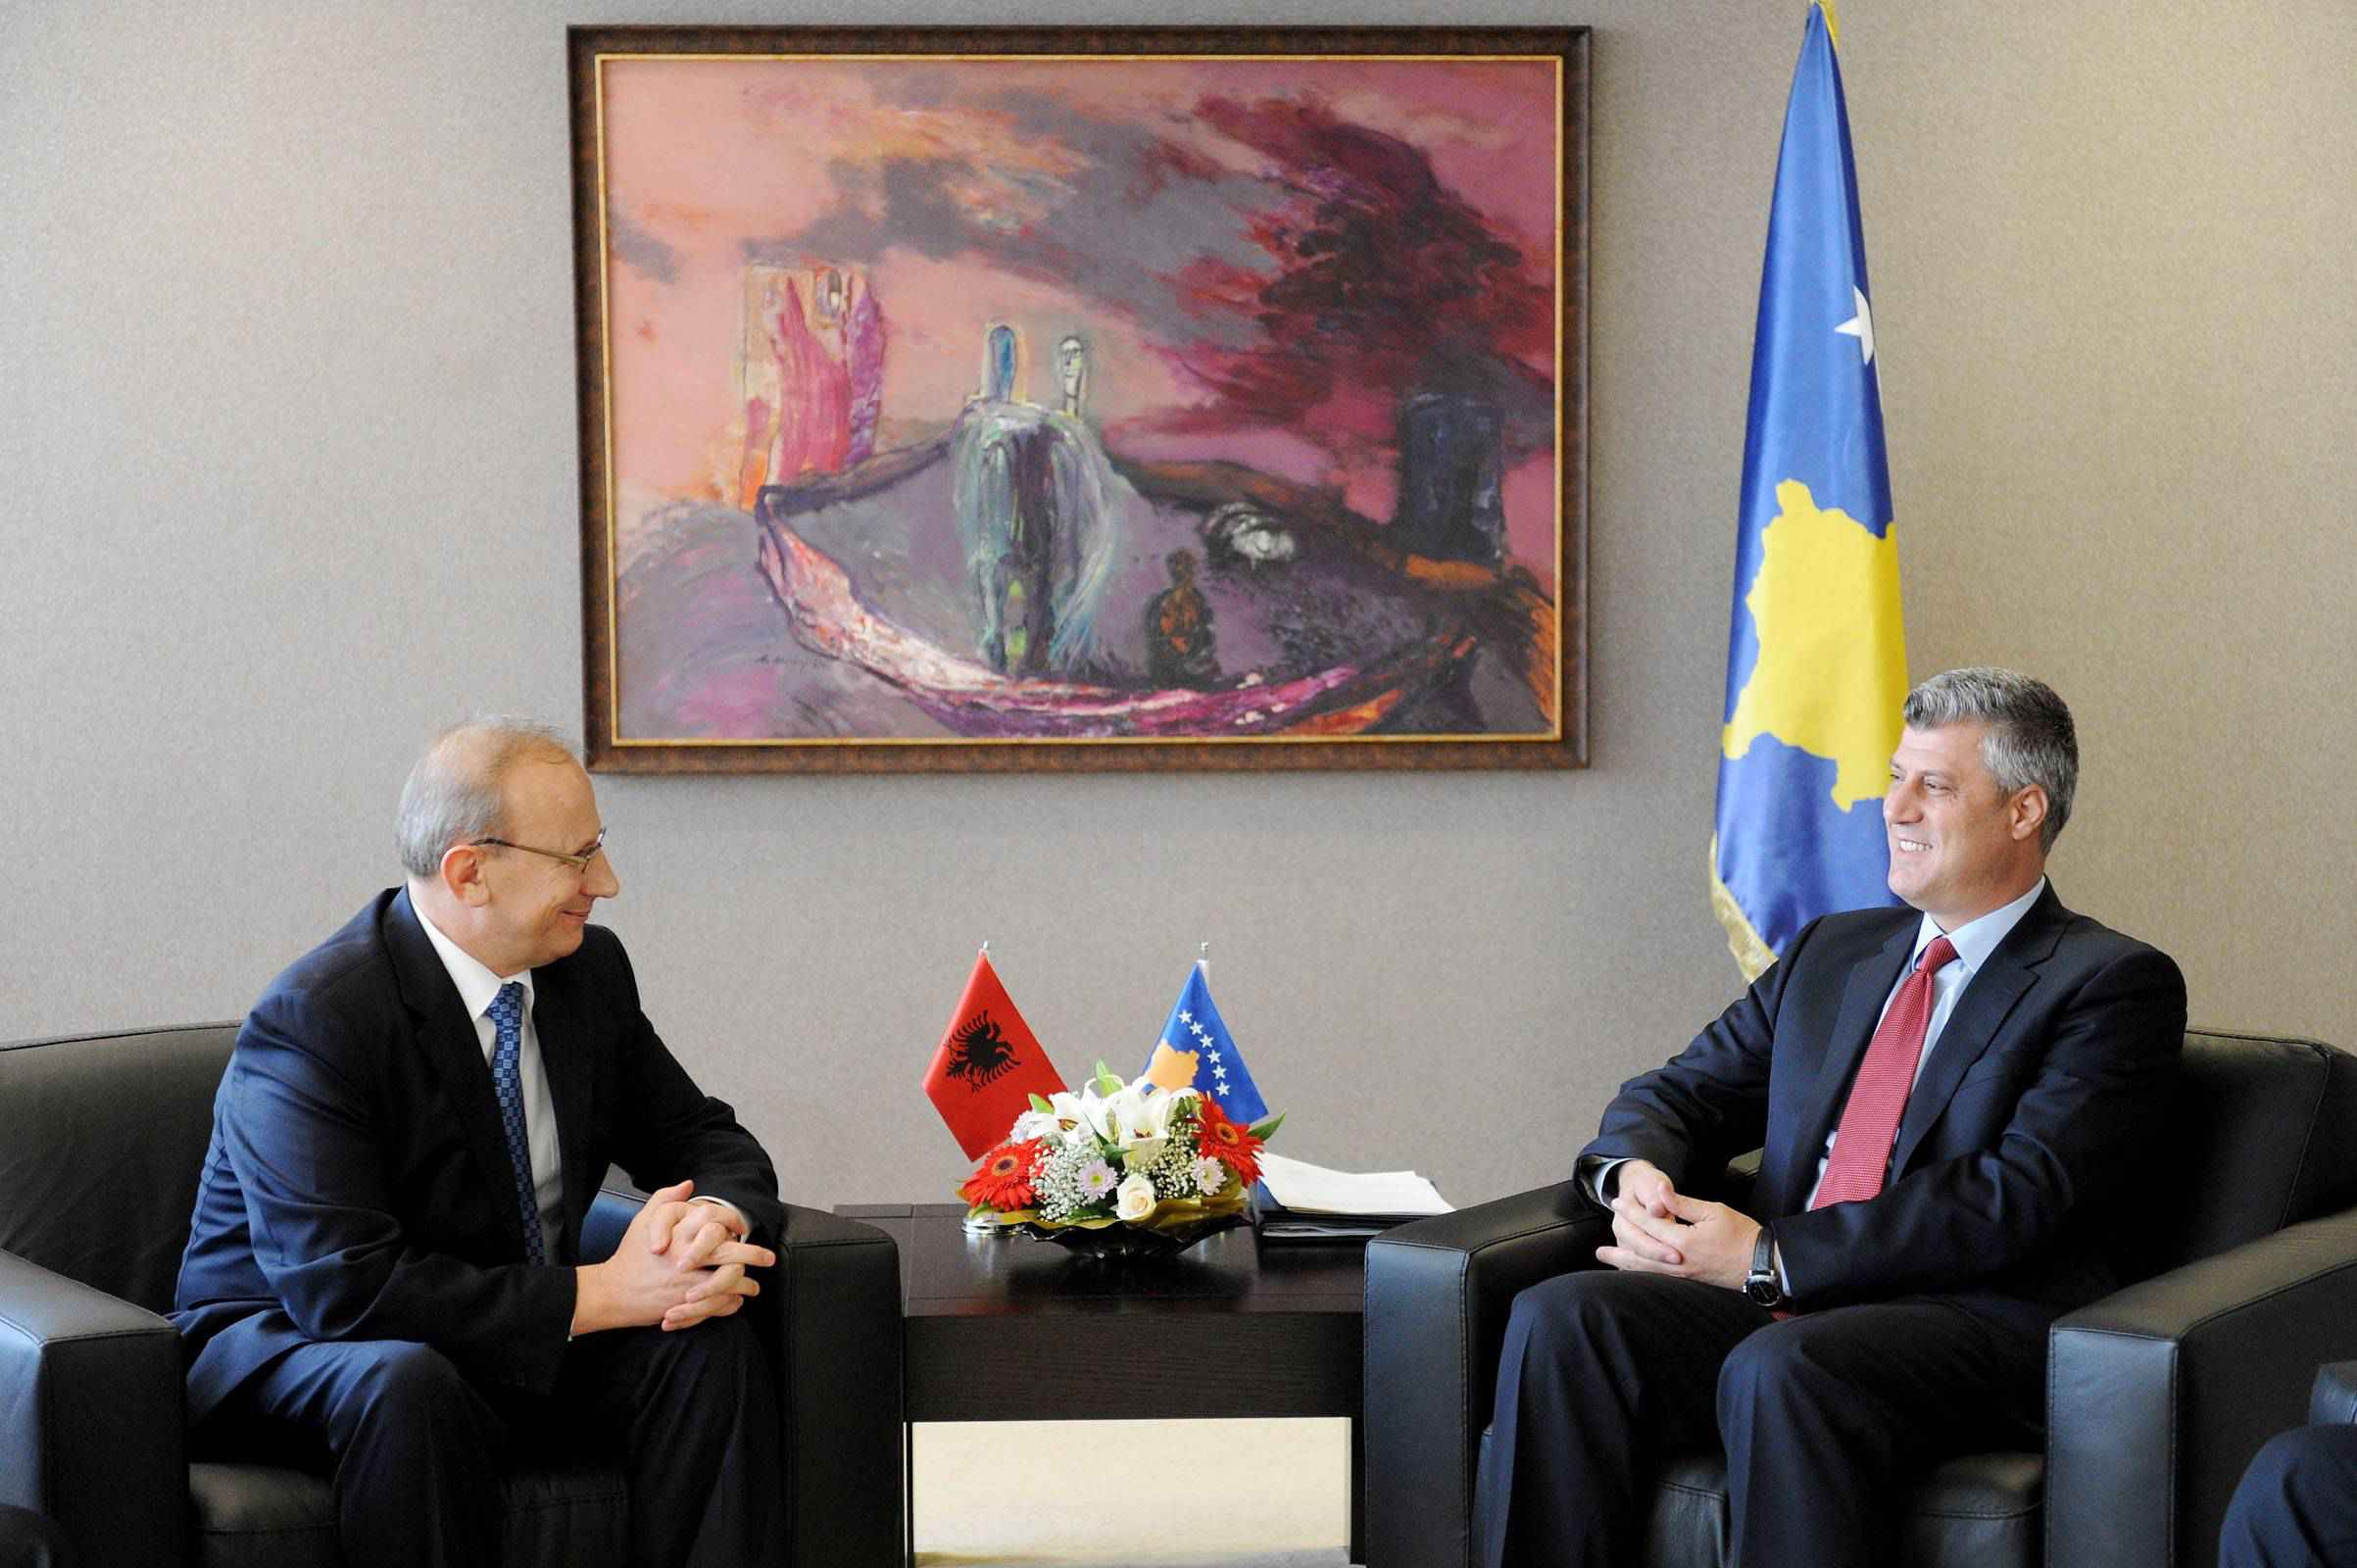 Kryeministri Thaçi ka pritur sot ministrin e Arsimit të Shqipërisë